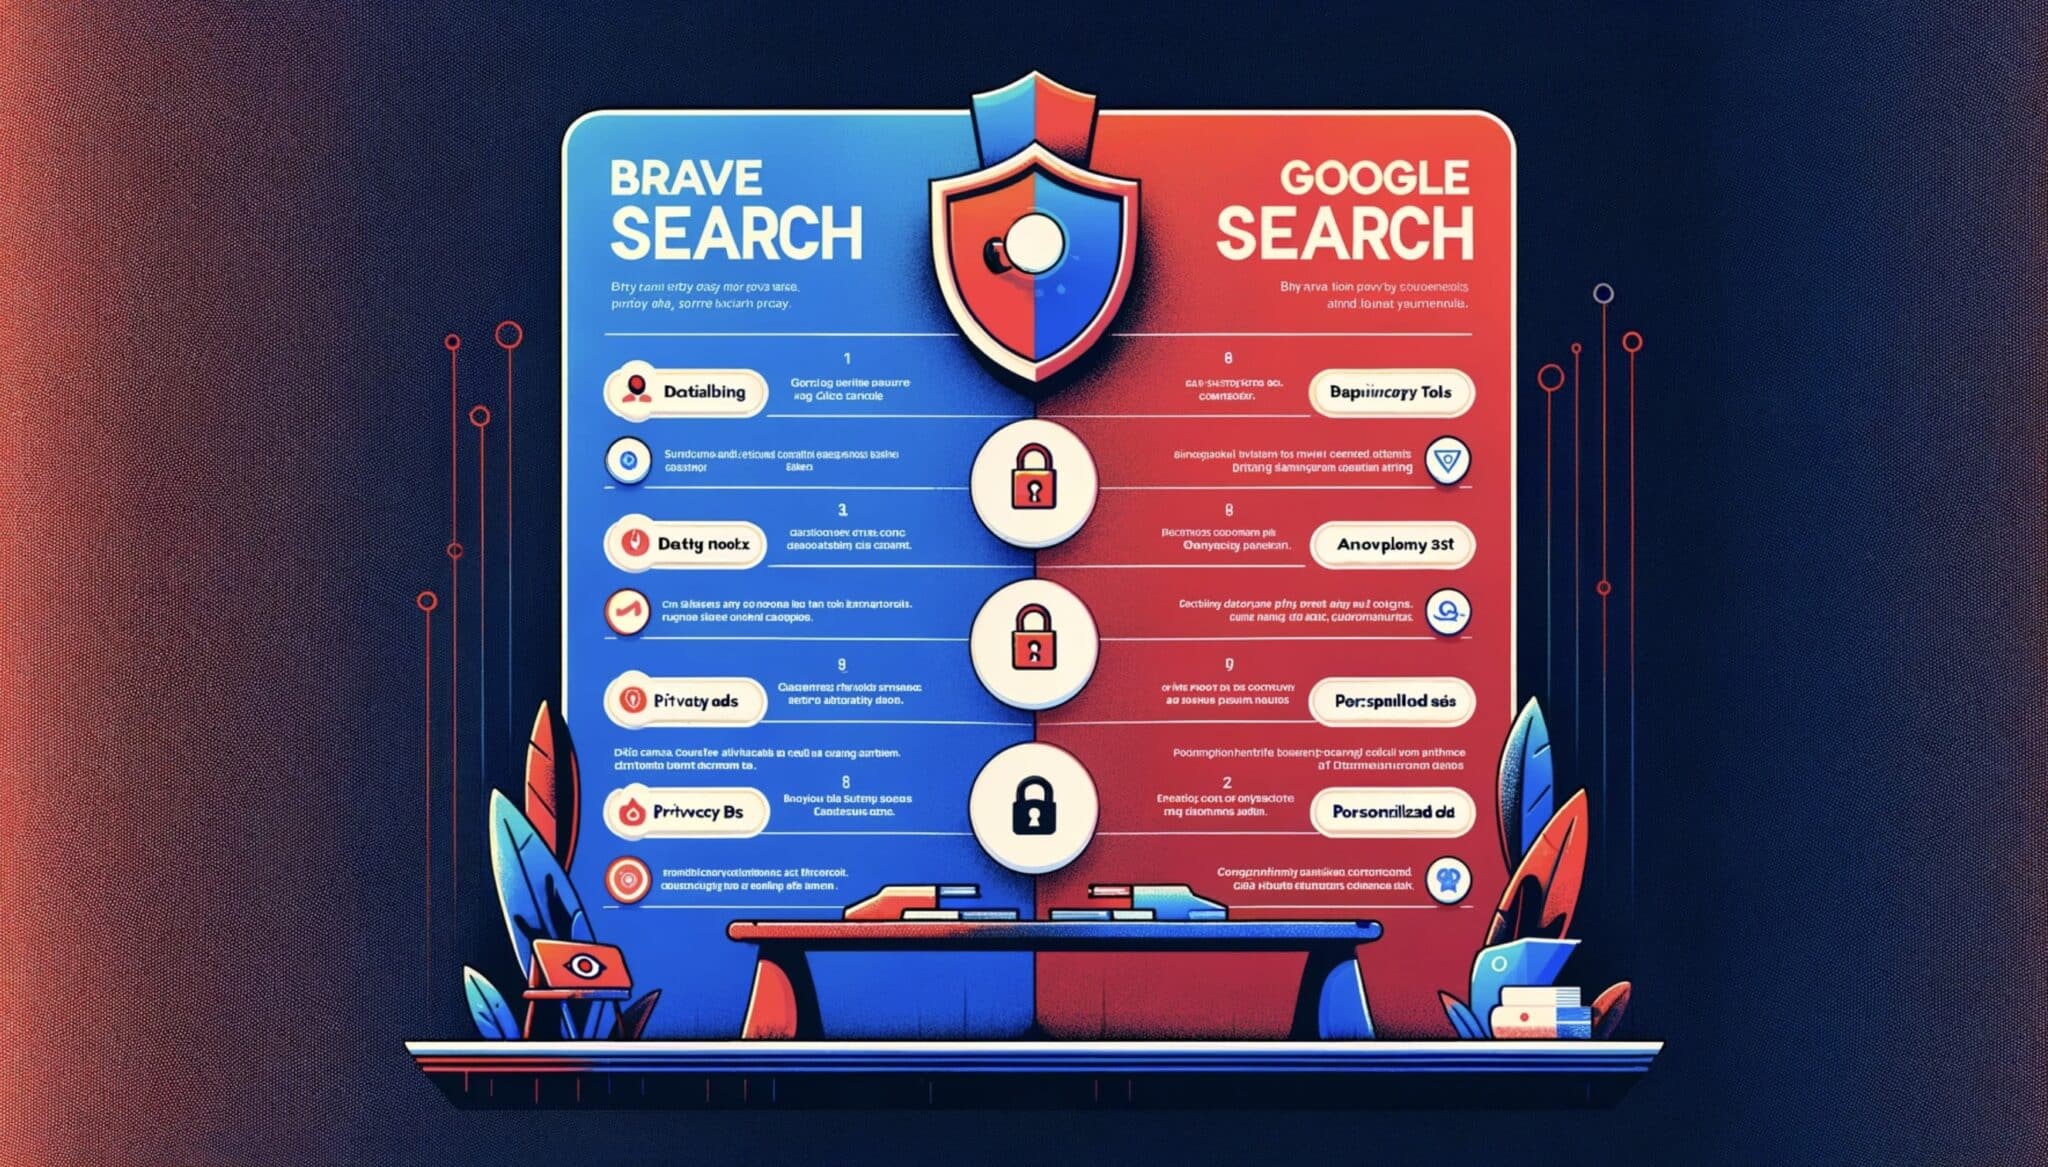 Hoe verhoudt Brave Search zich tot Google wat betreft de bescherming van persoonlijke gegevens?